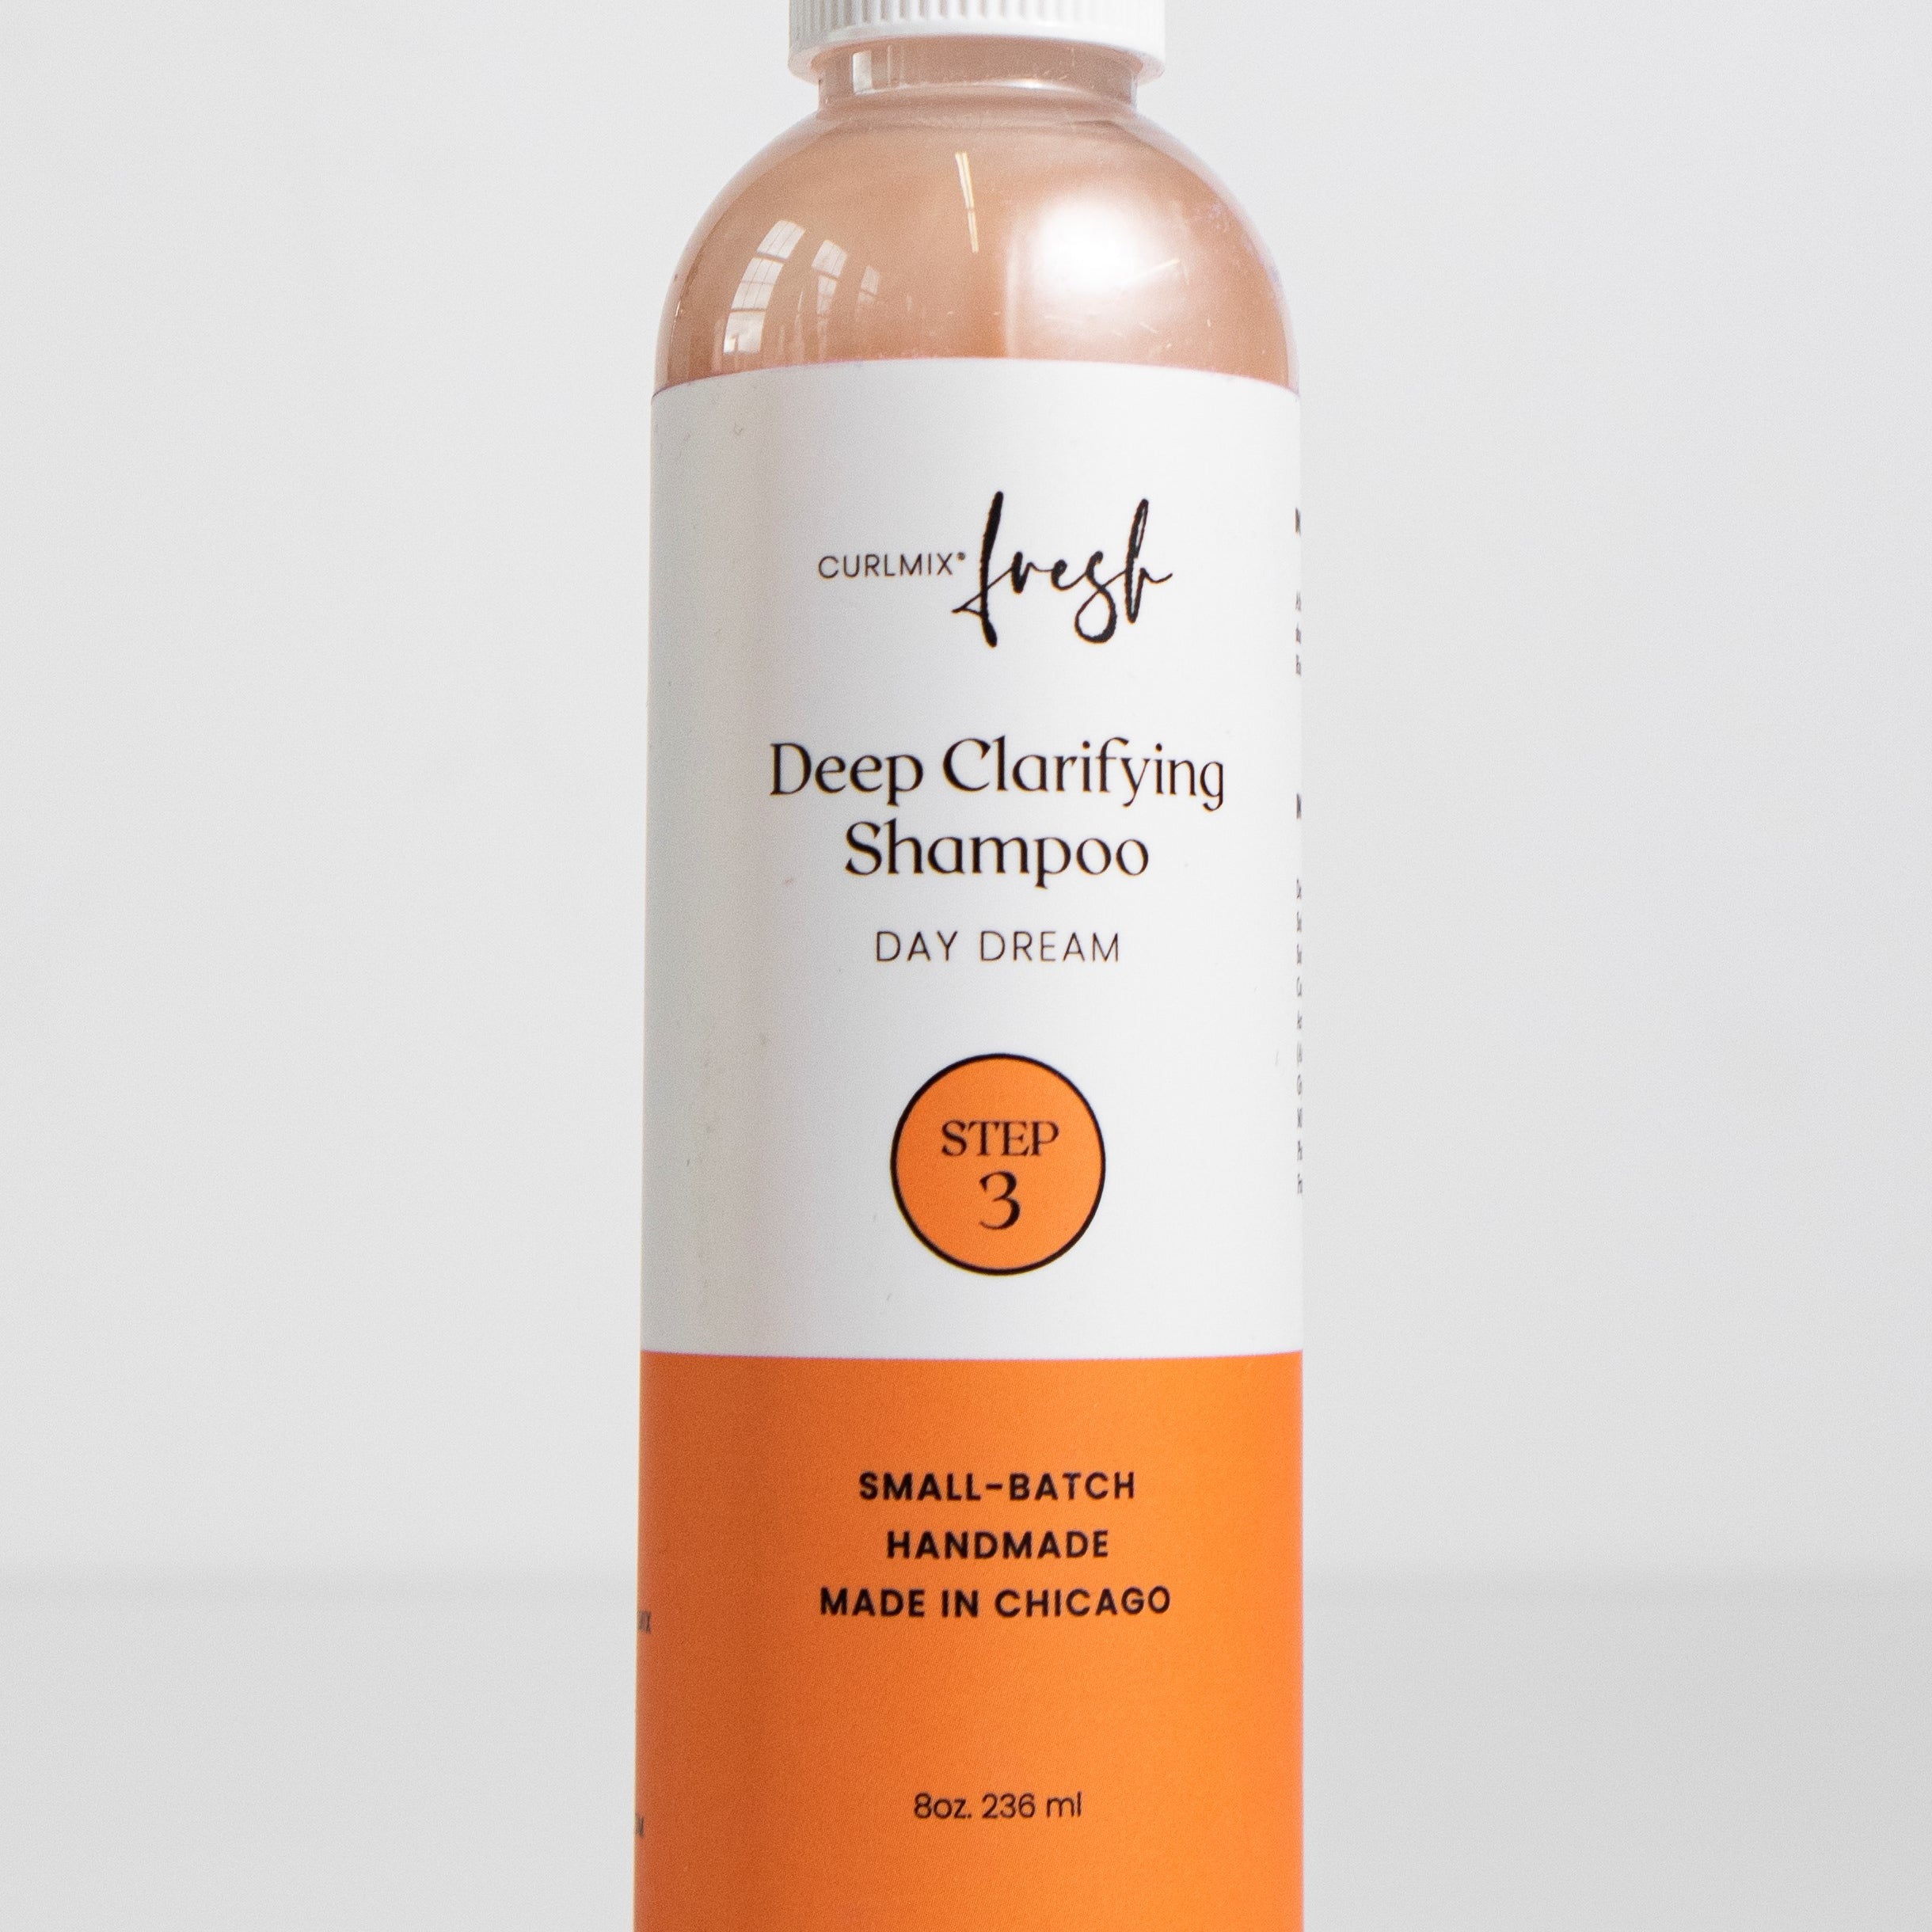 Deep Clarifying Shampoo Day Dream CurlMix Fresh